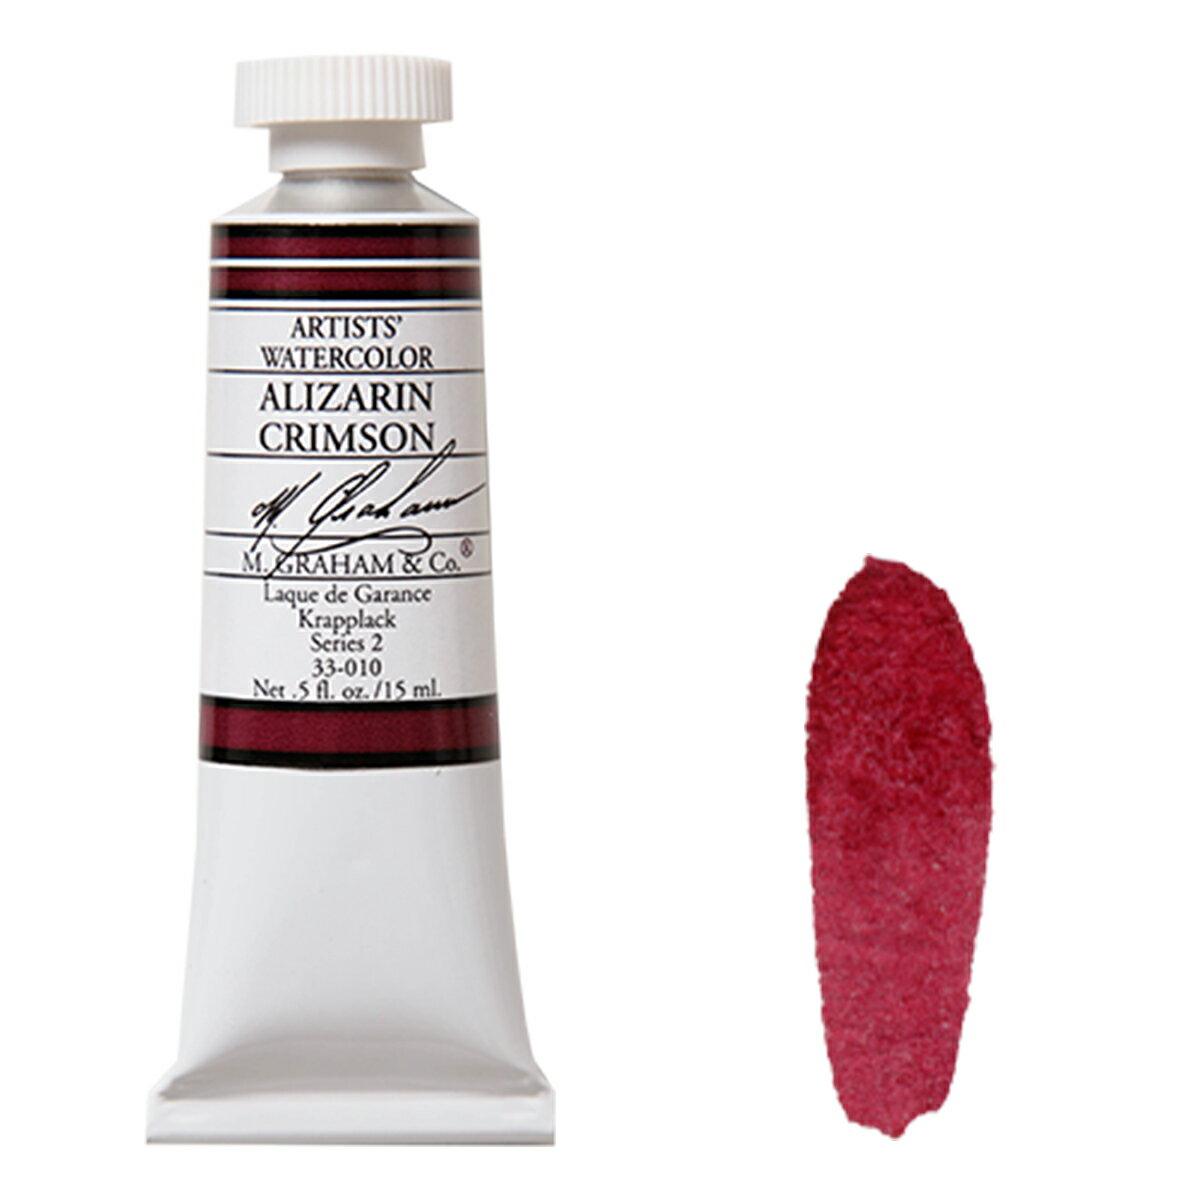 アリザリンクリムソン (Alizarin Crimson) 15mlチューブ 水彩絵具 M.グラハム